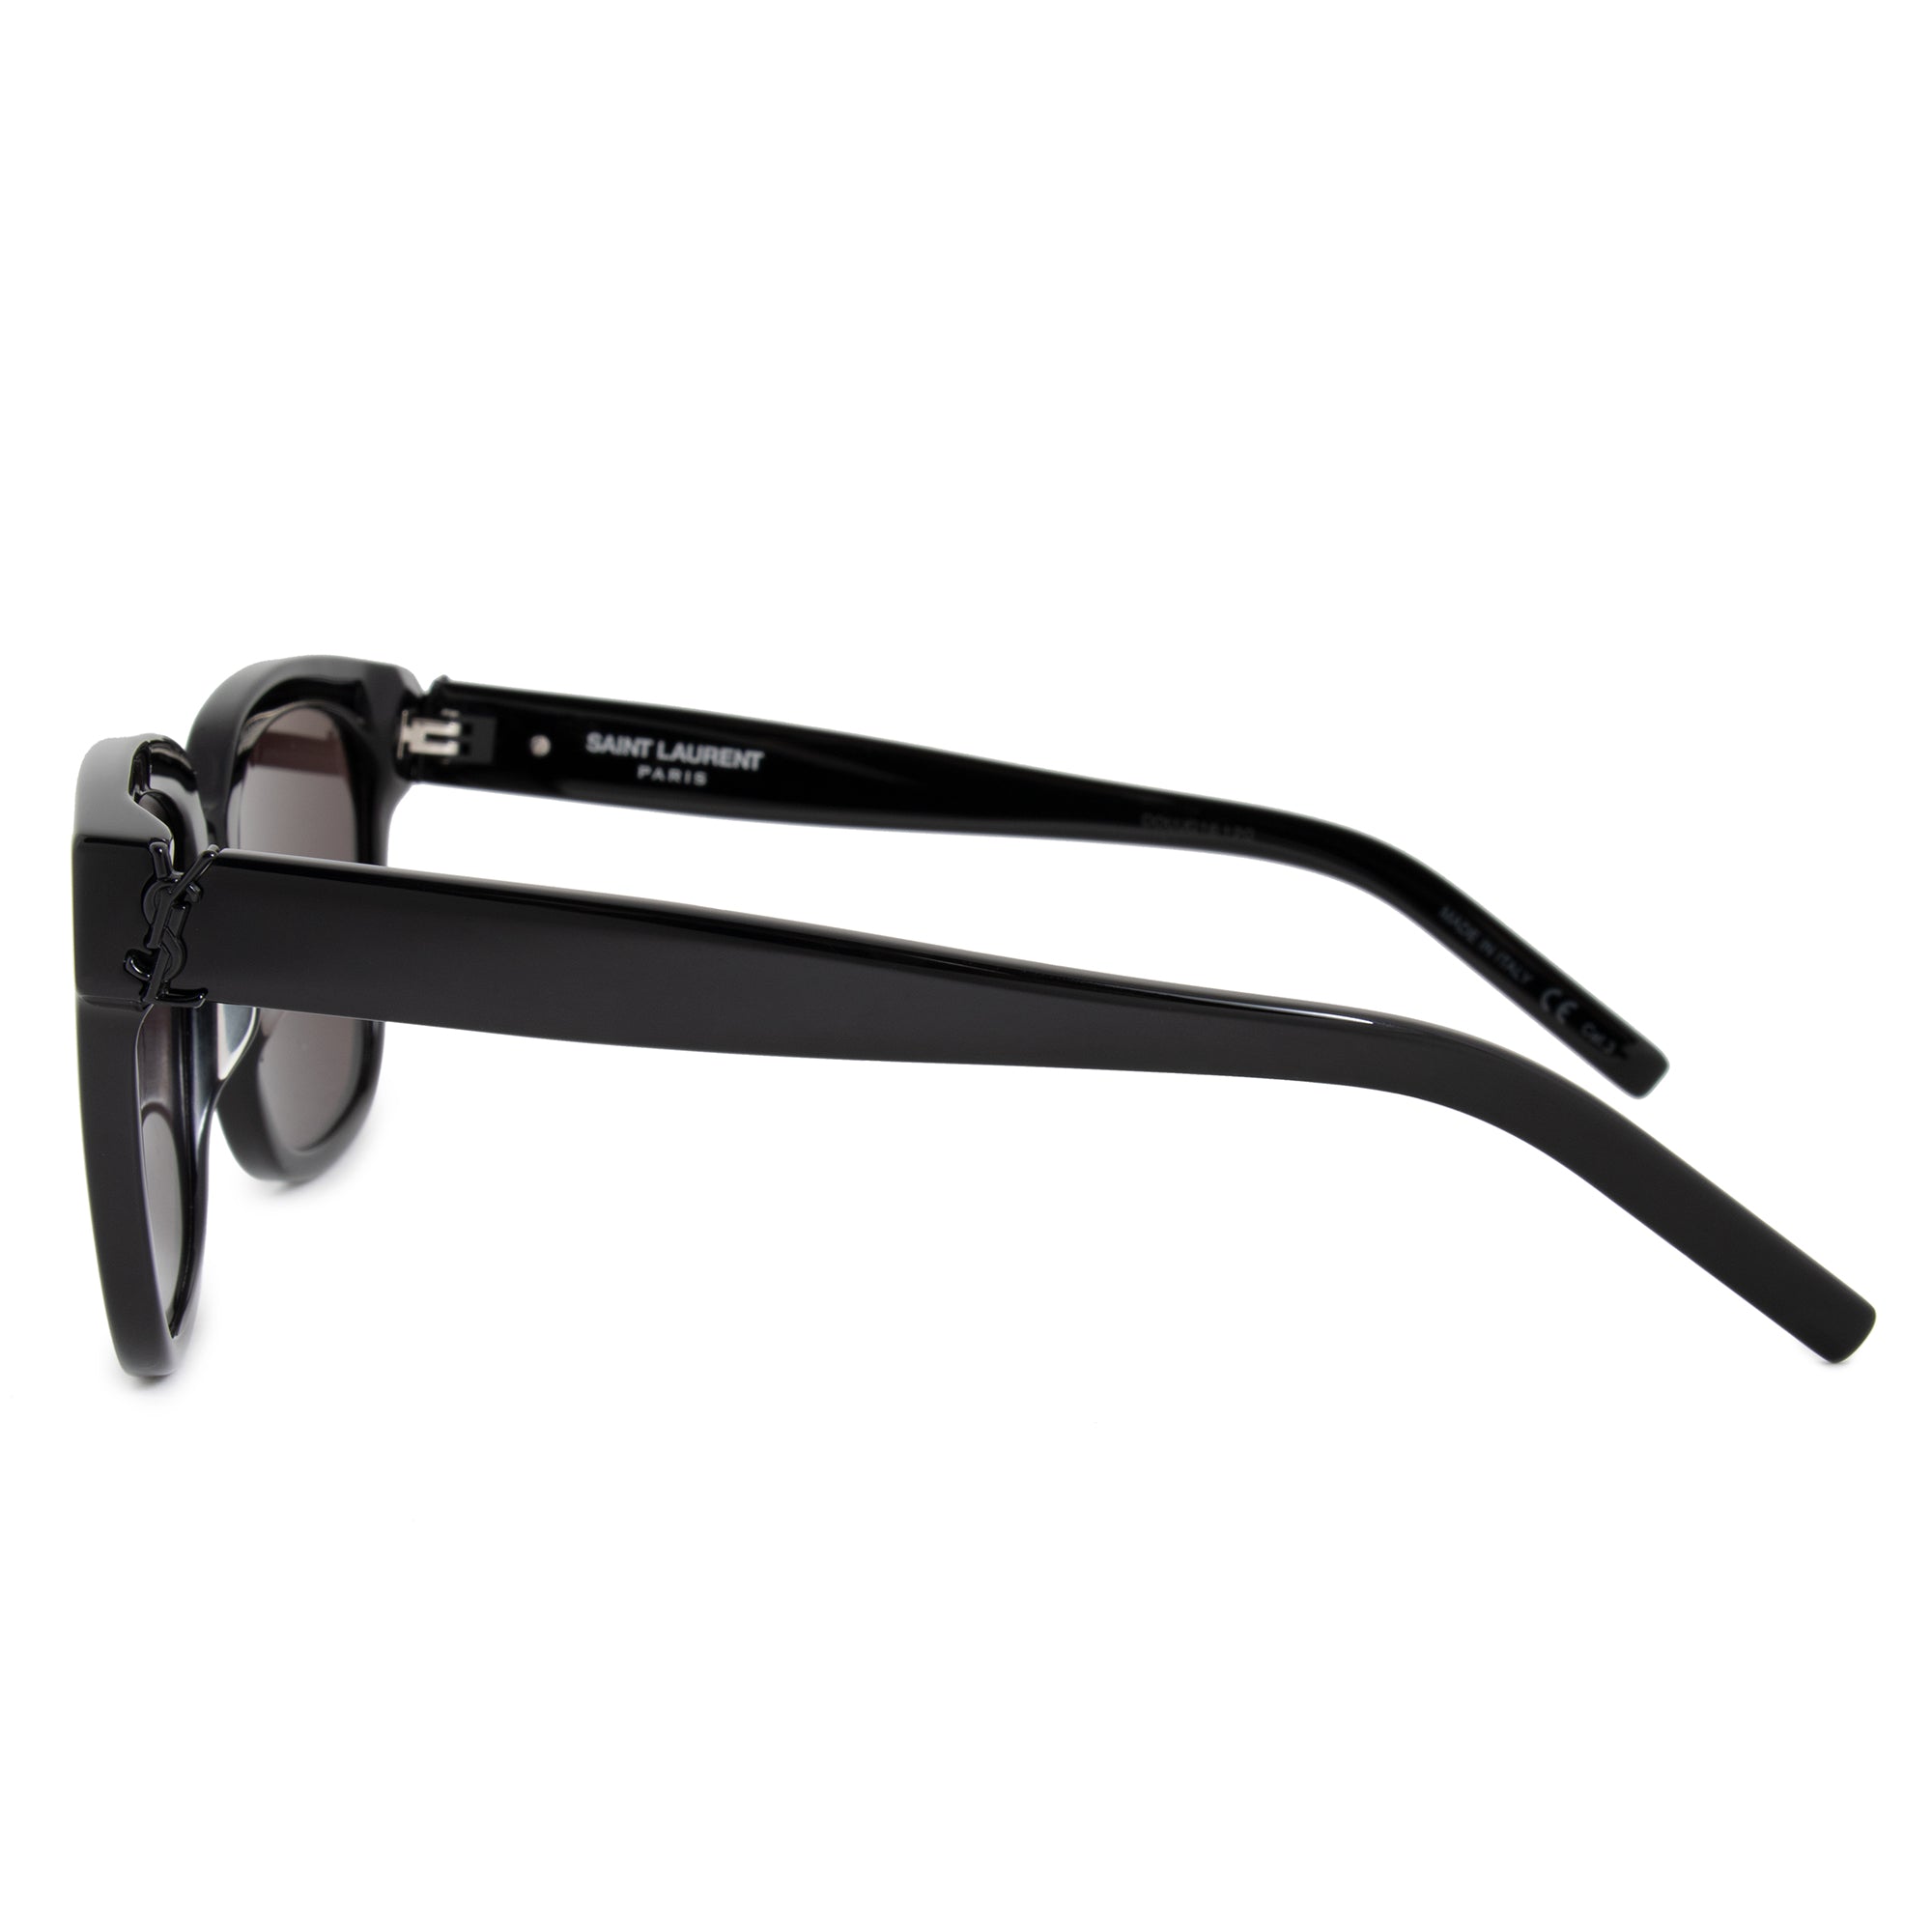 Saint Laurent SL M40 001 54 Square Sunglasses